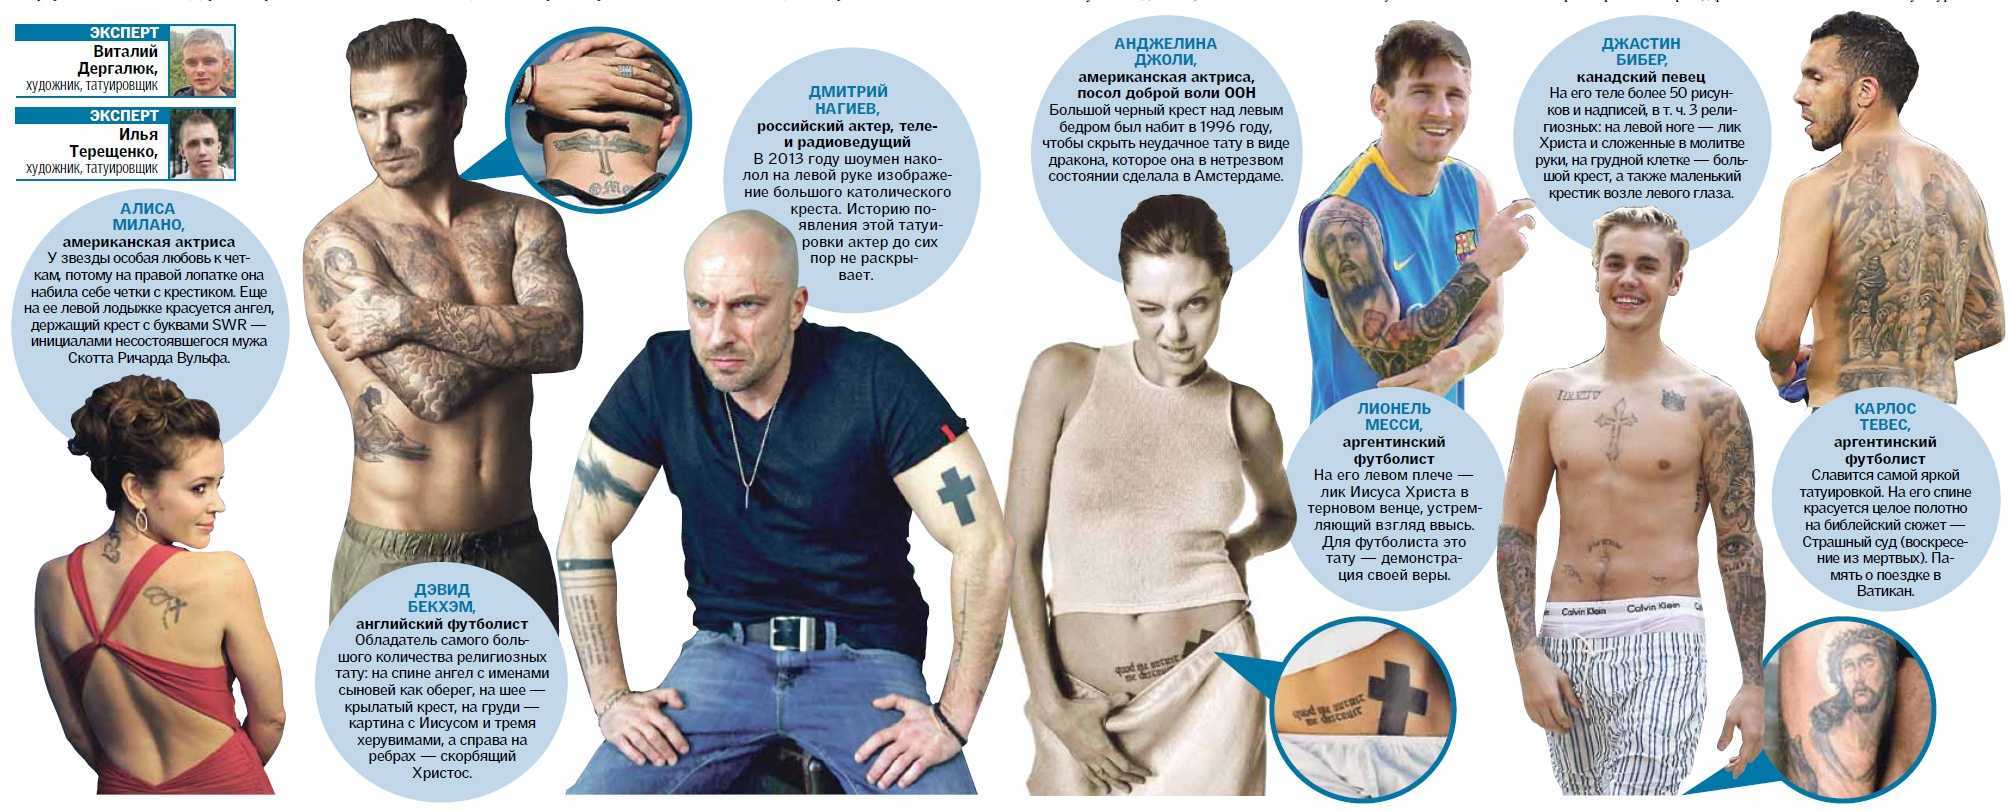 Отношение людей к татуировкам